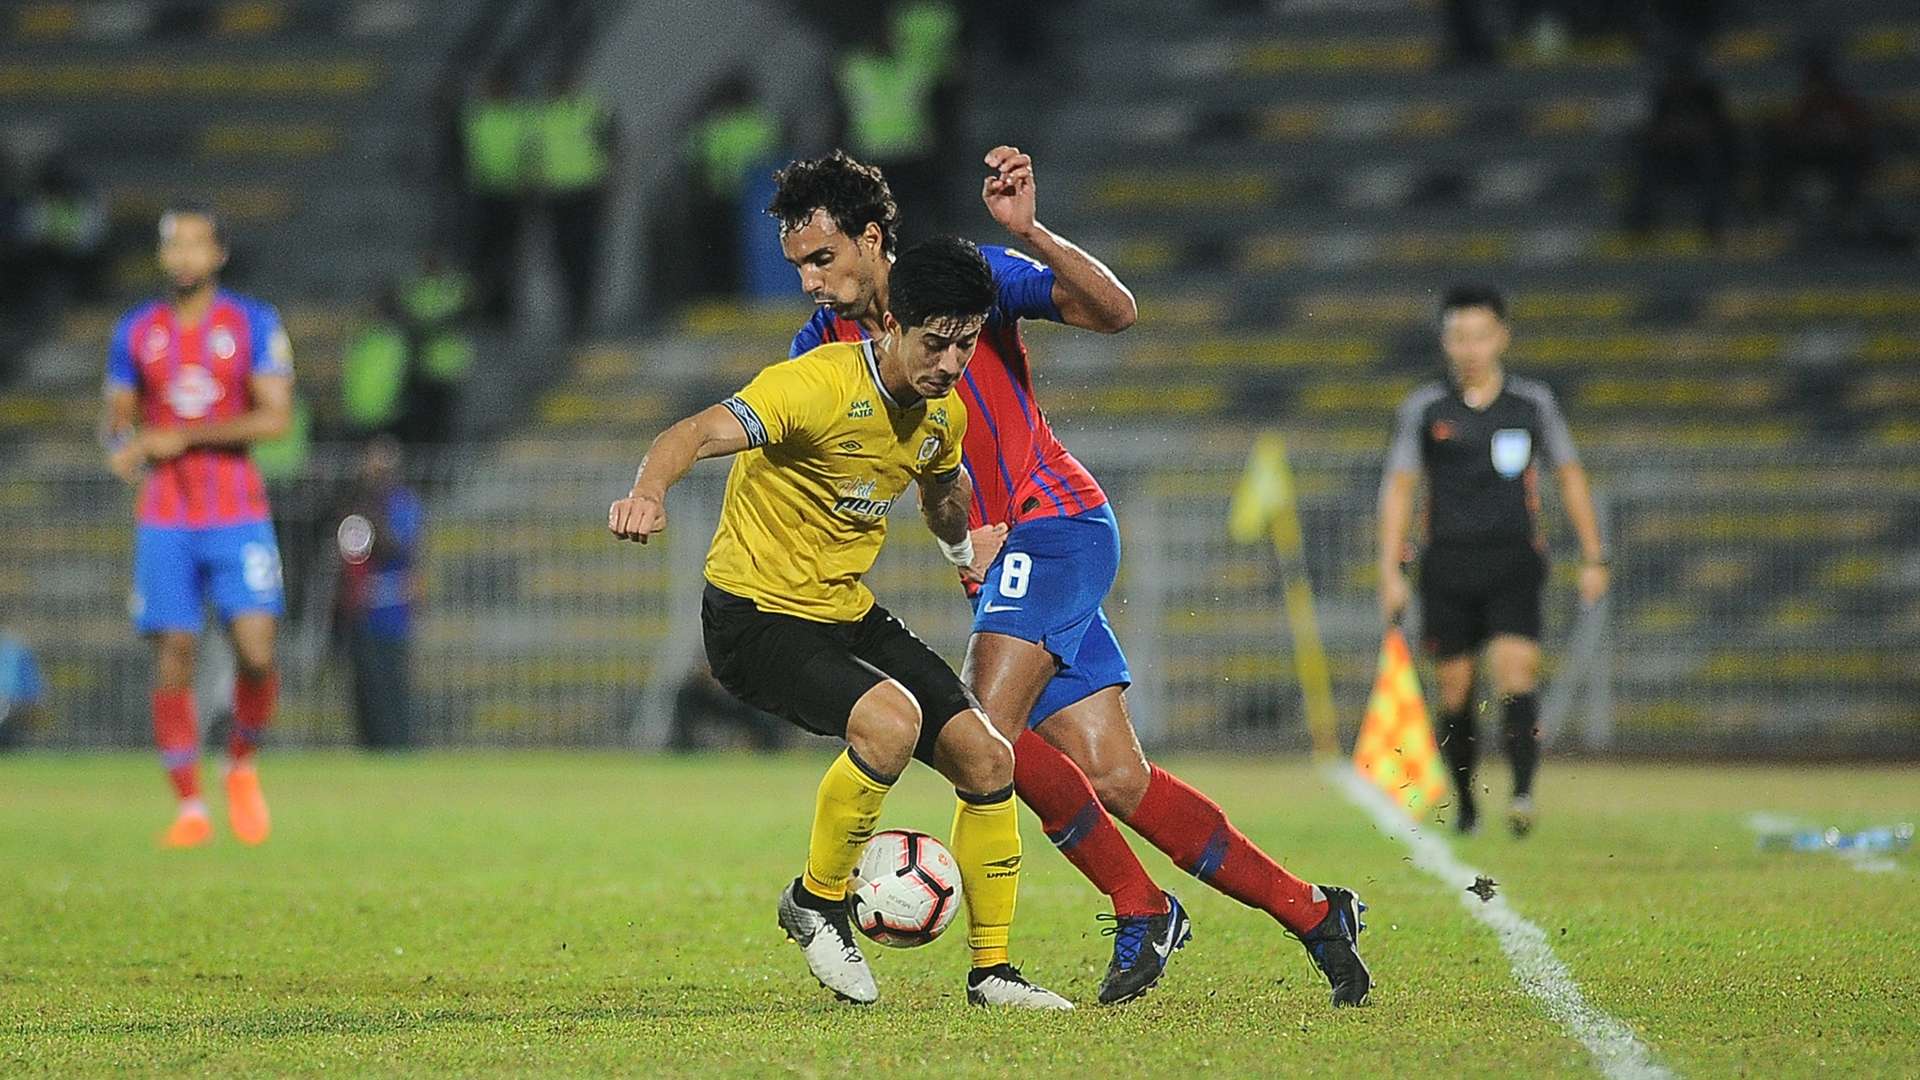 Brendan Gan, Perak v Johor Darul Ta'zim, Malaysia Super League, 6 Jul 2019